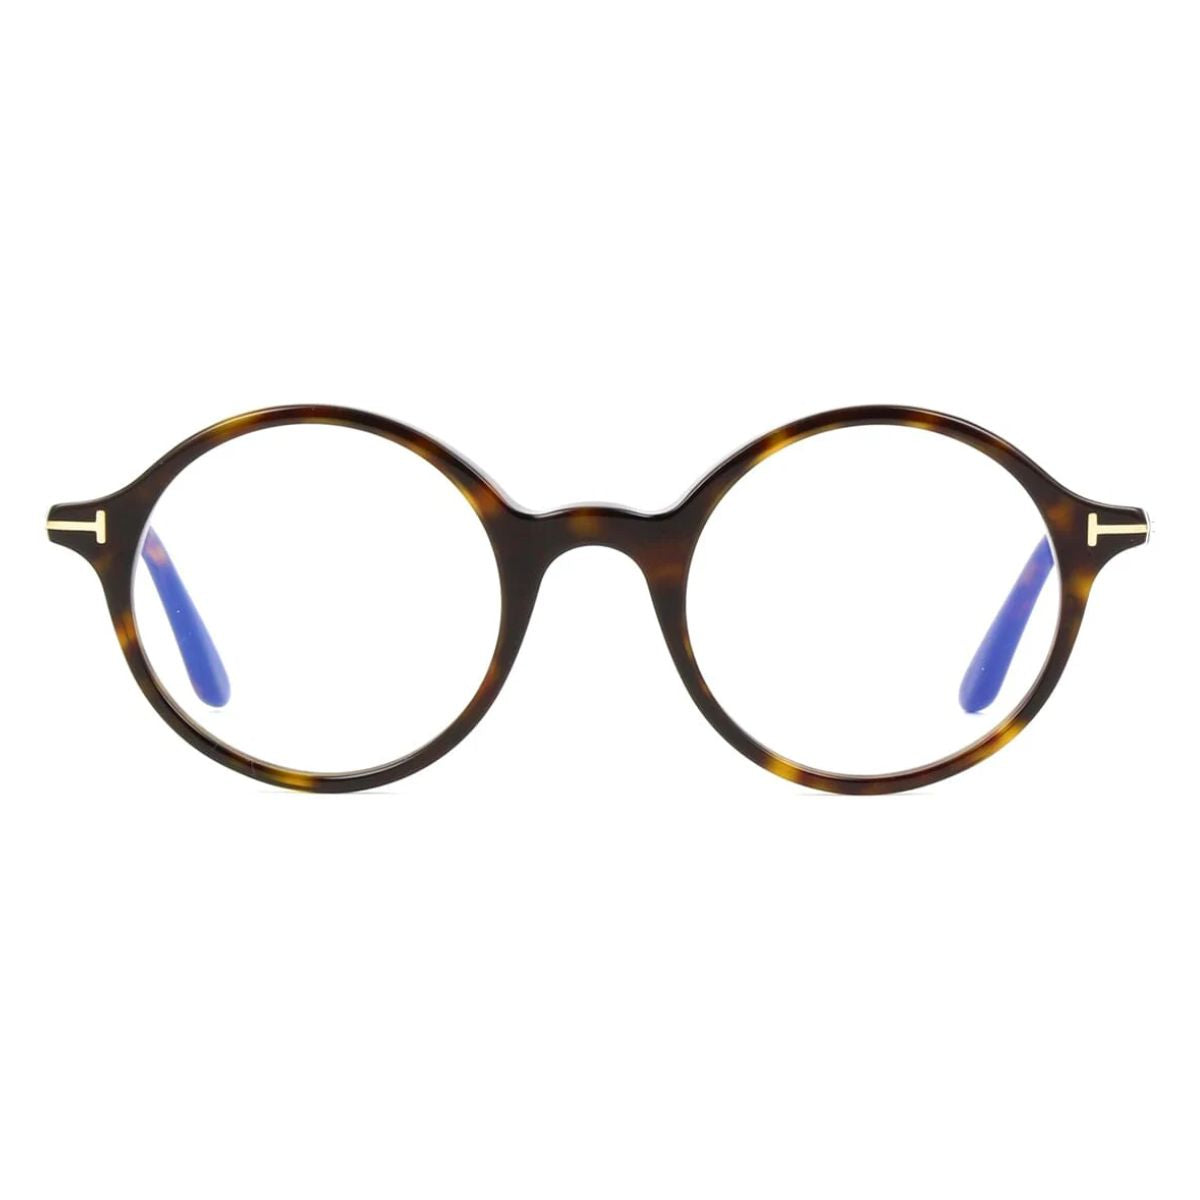 "Trendy Tom Ford Rounded Eyeglasses For Men's At Optorium"